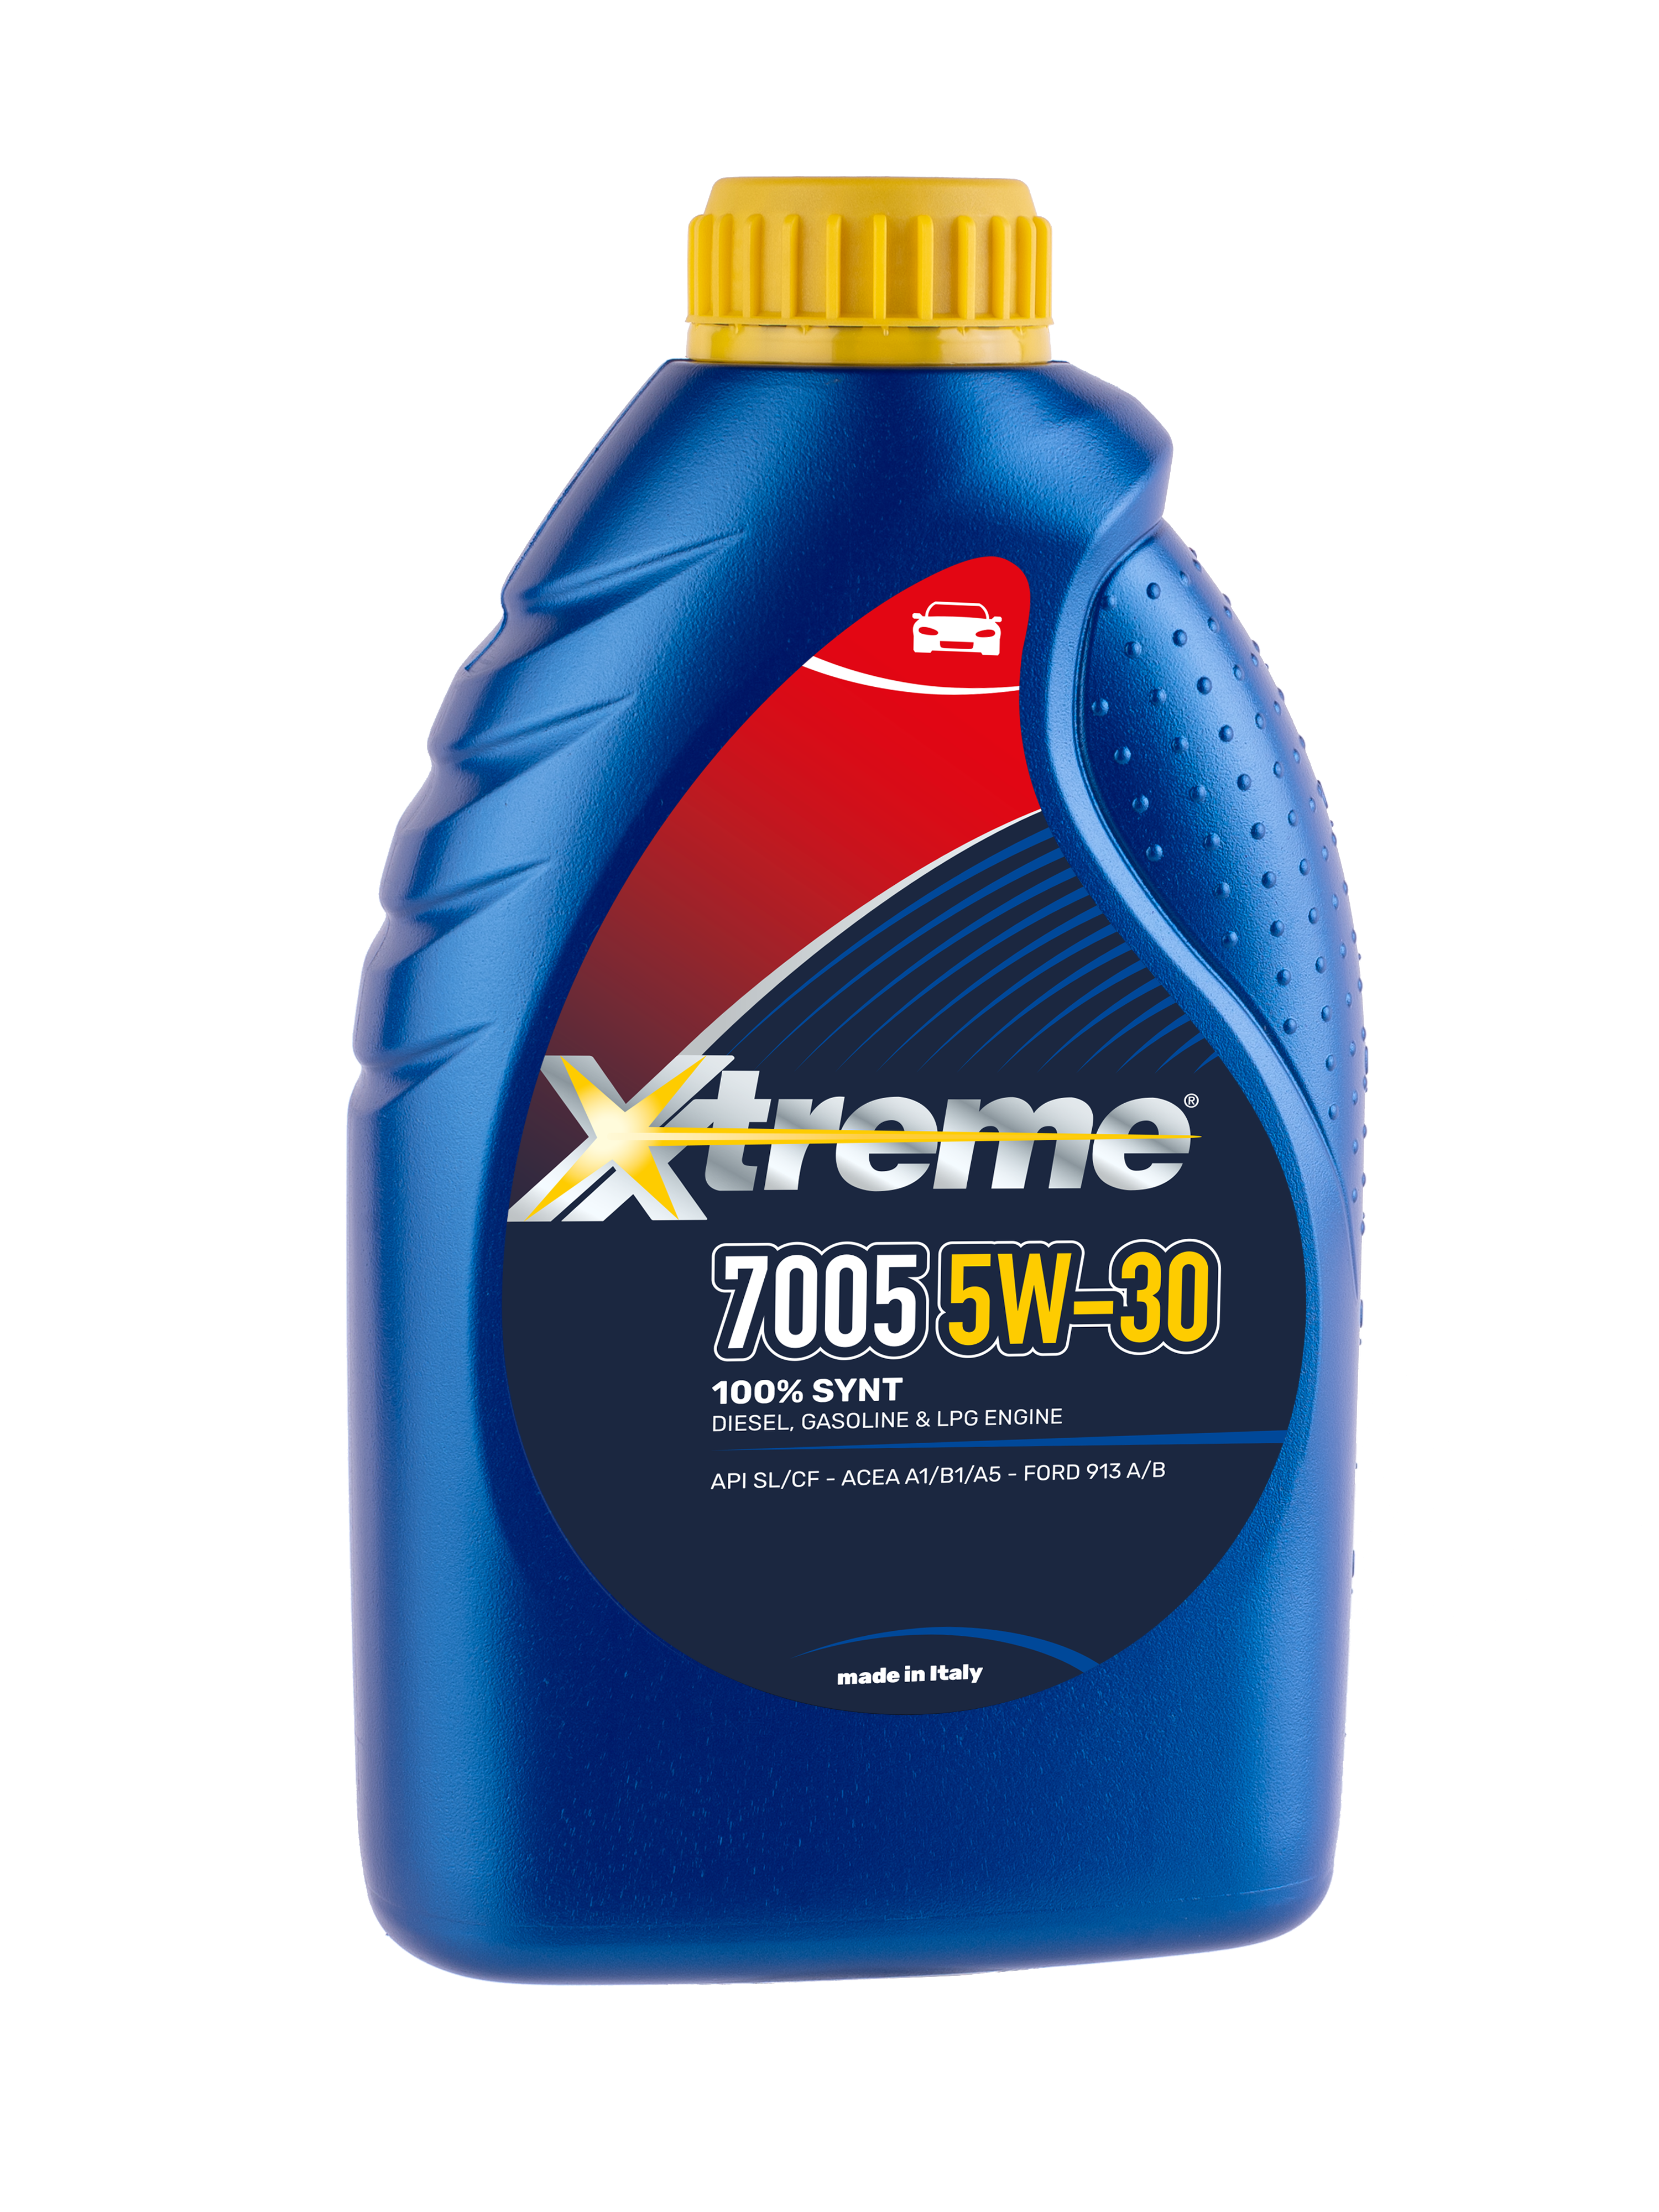 Xtreme 7005 5W30 – Axxonoil